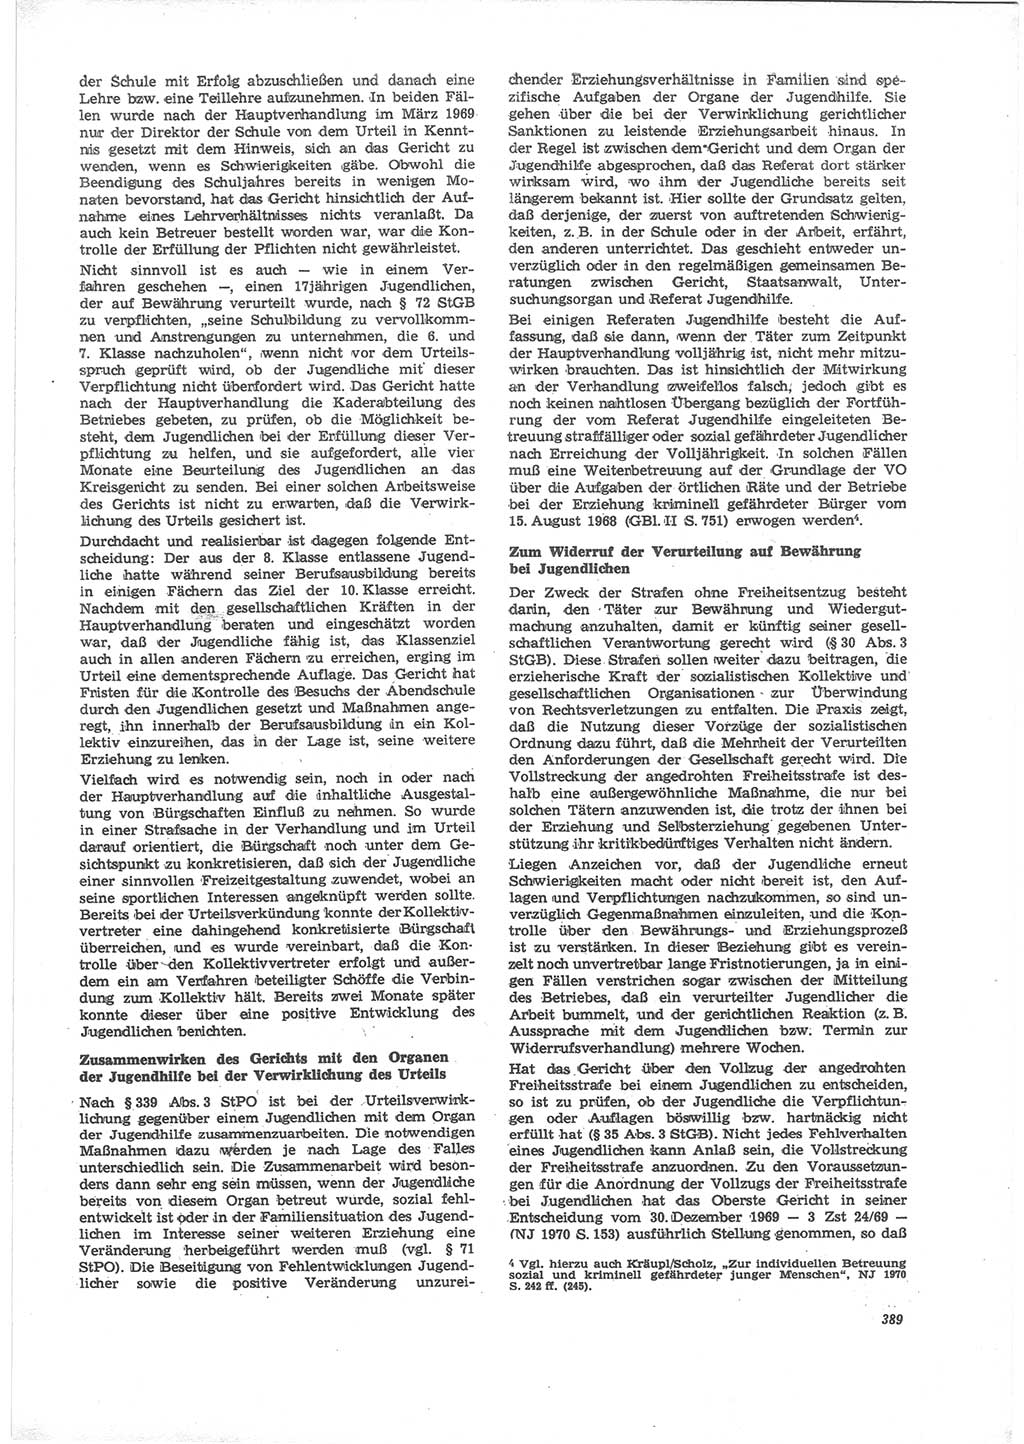 Neue Justiz (NJ), Zeitschrift für Recht und Rechtswissenschaft [Deutsche Demokratische Republik (DDR)], 24. Jahrgang 1970, Seite 389 (NJ DDR 1970, S. 389)